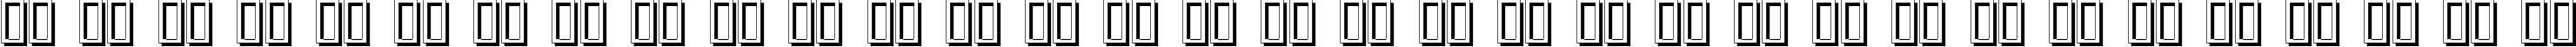 Пример написания русского алфавита шрифтом Fraktur Shadowed